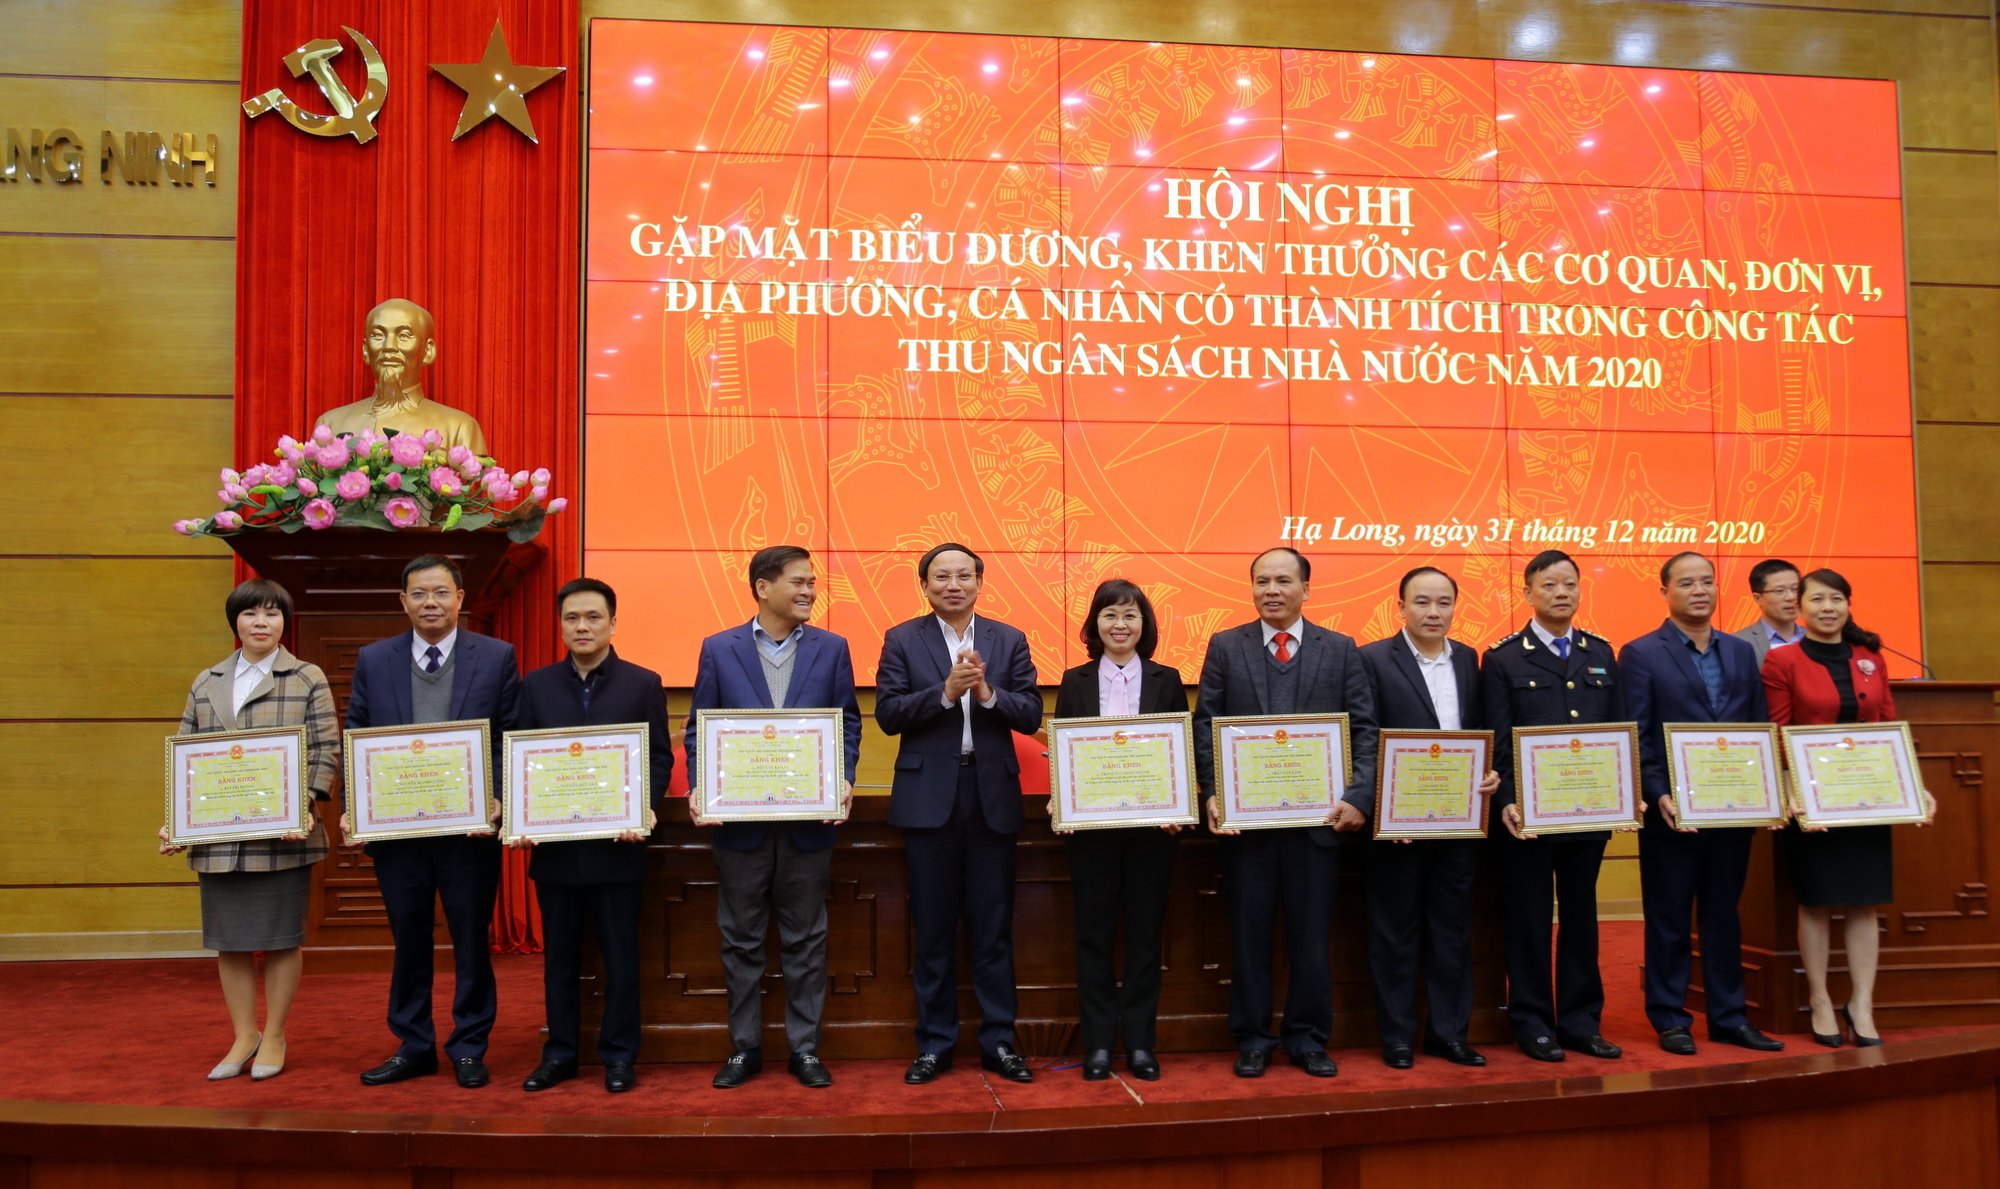 Đồng chí Nguyễn Xuân Ký, Bí thư Tỉnh ủy, Chủ tịch HĐND tỉnh trao Bằng khen của UBND tỉnh cho các cá nhân có đóng góp tích cực vào công tác thu ngân sách nhà nước.